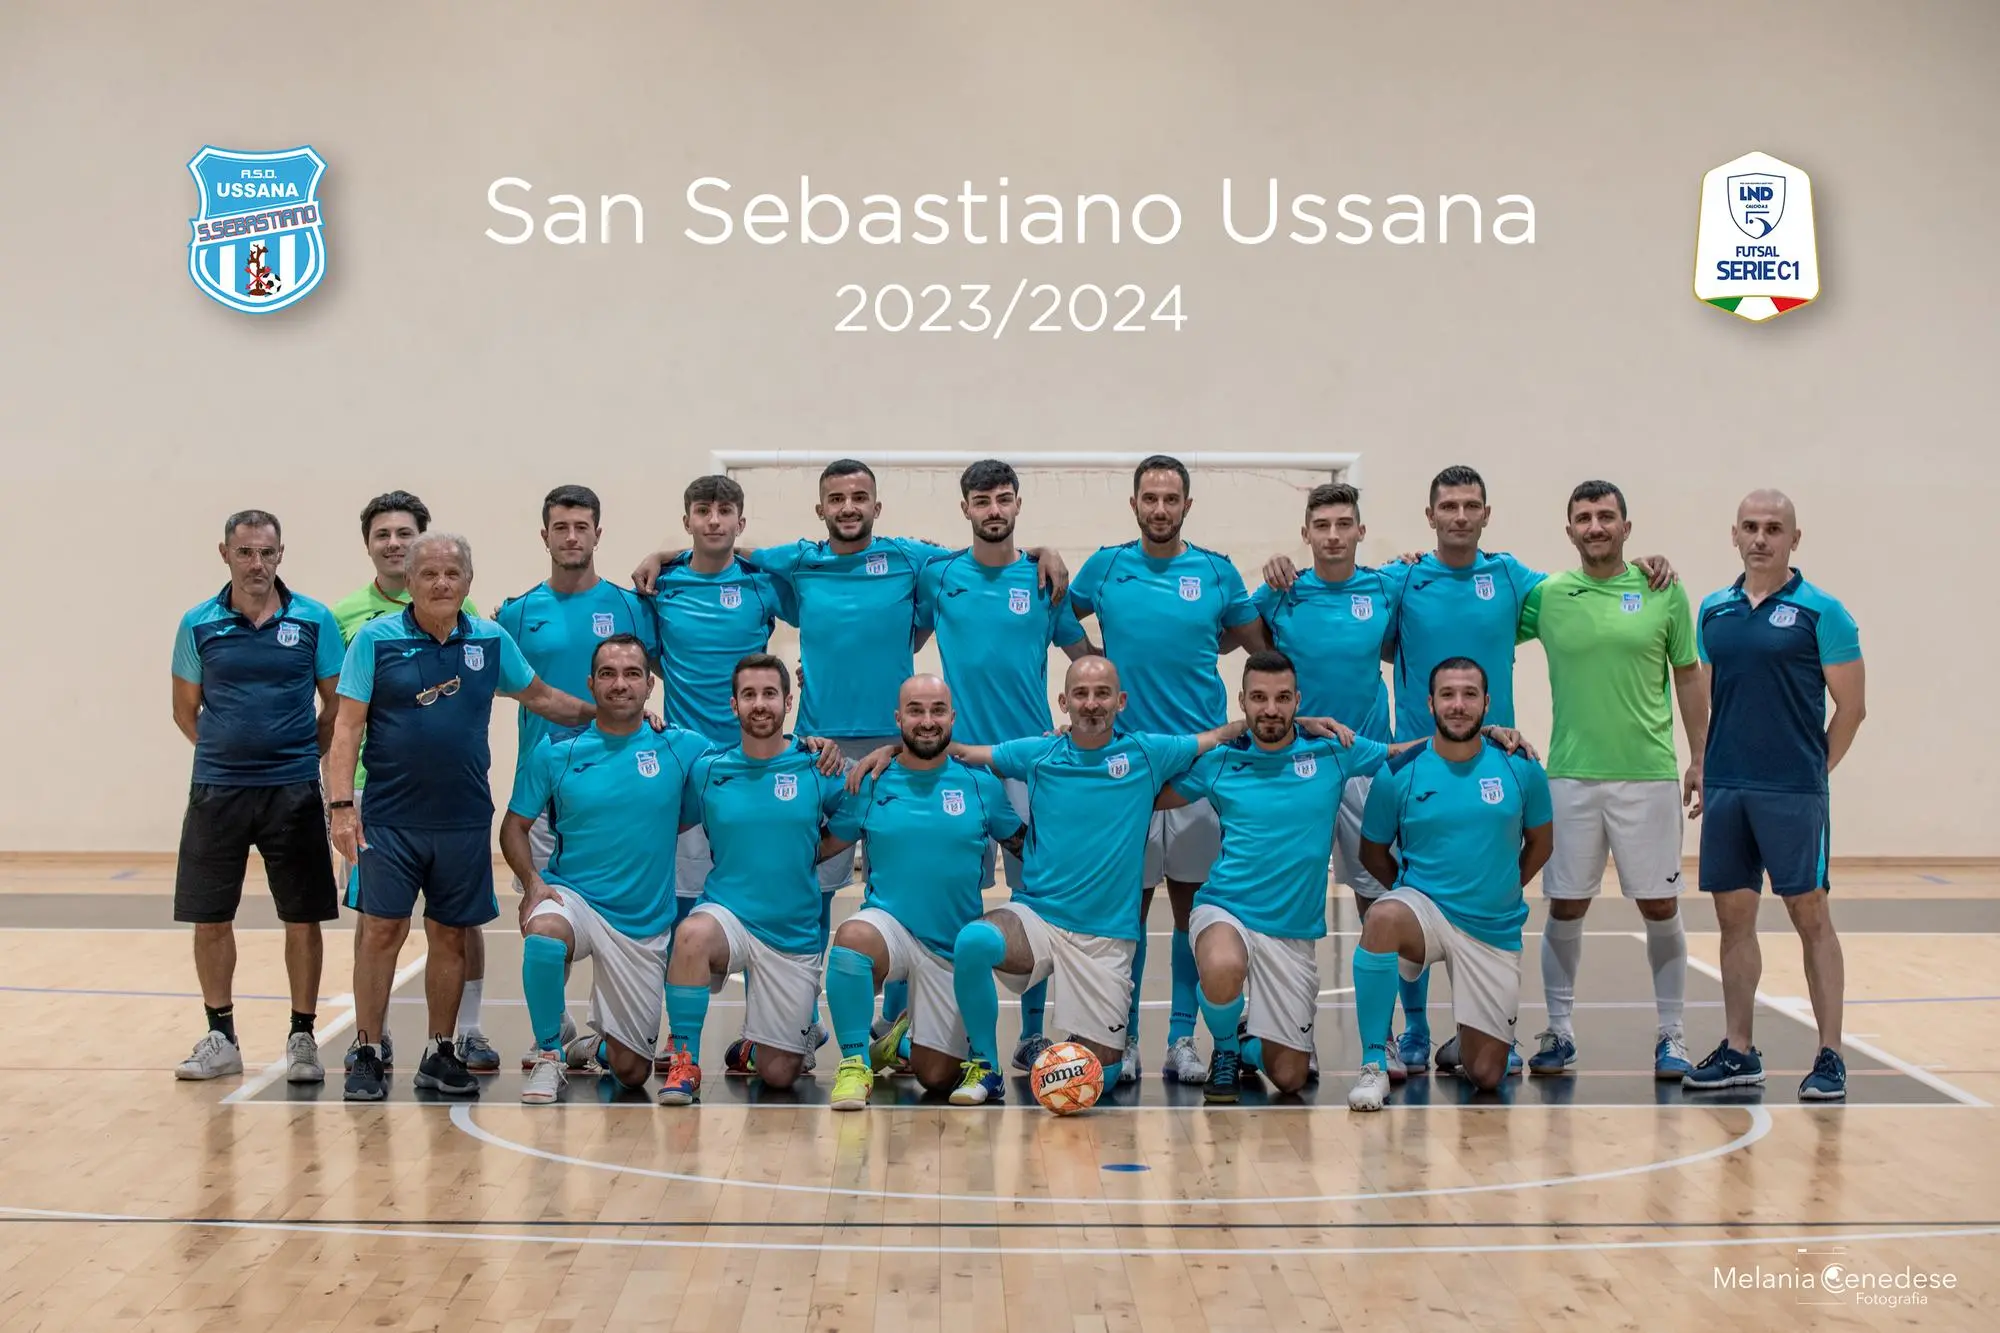 La foto di squadra della San Sebastiano Ussana di questa stagione (foto Melania Cenedese)